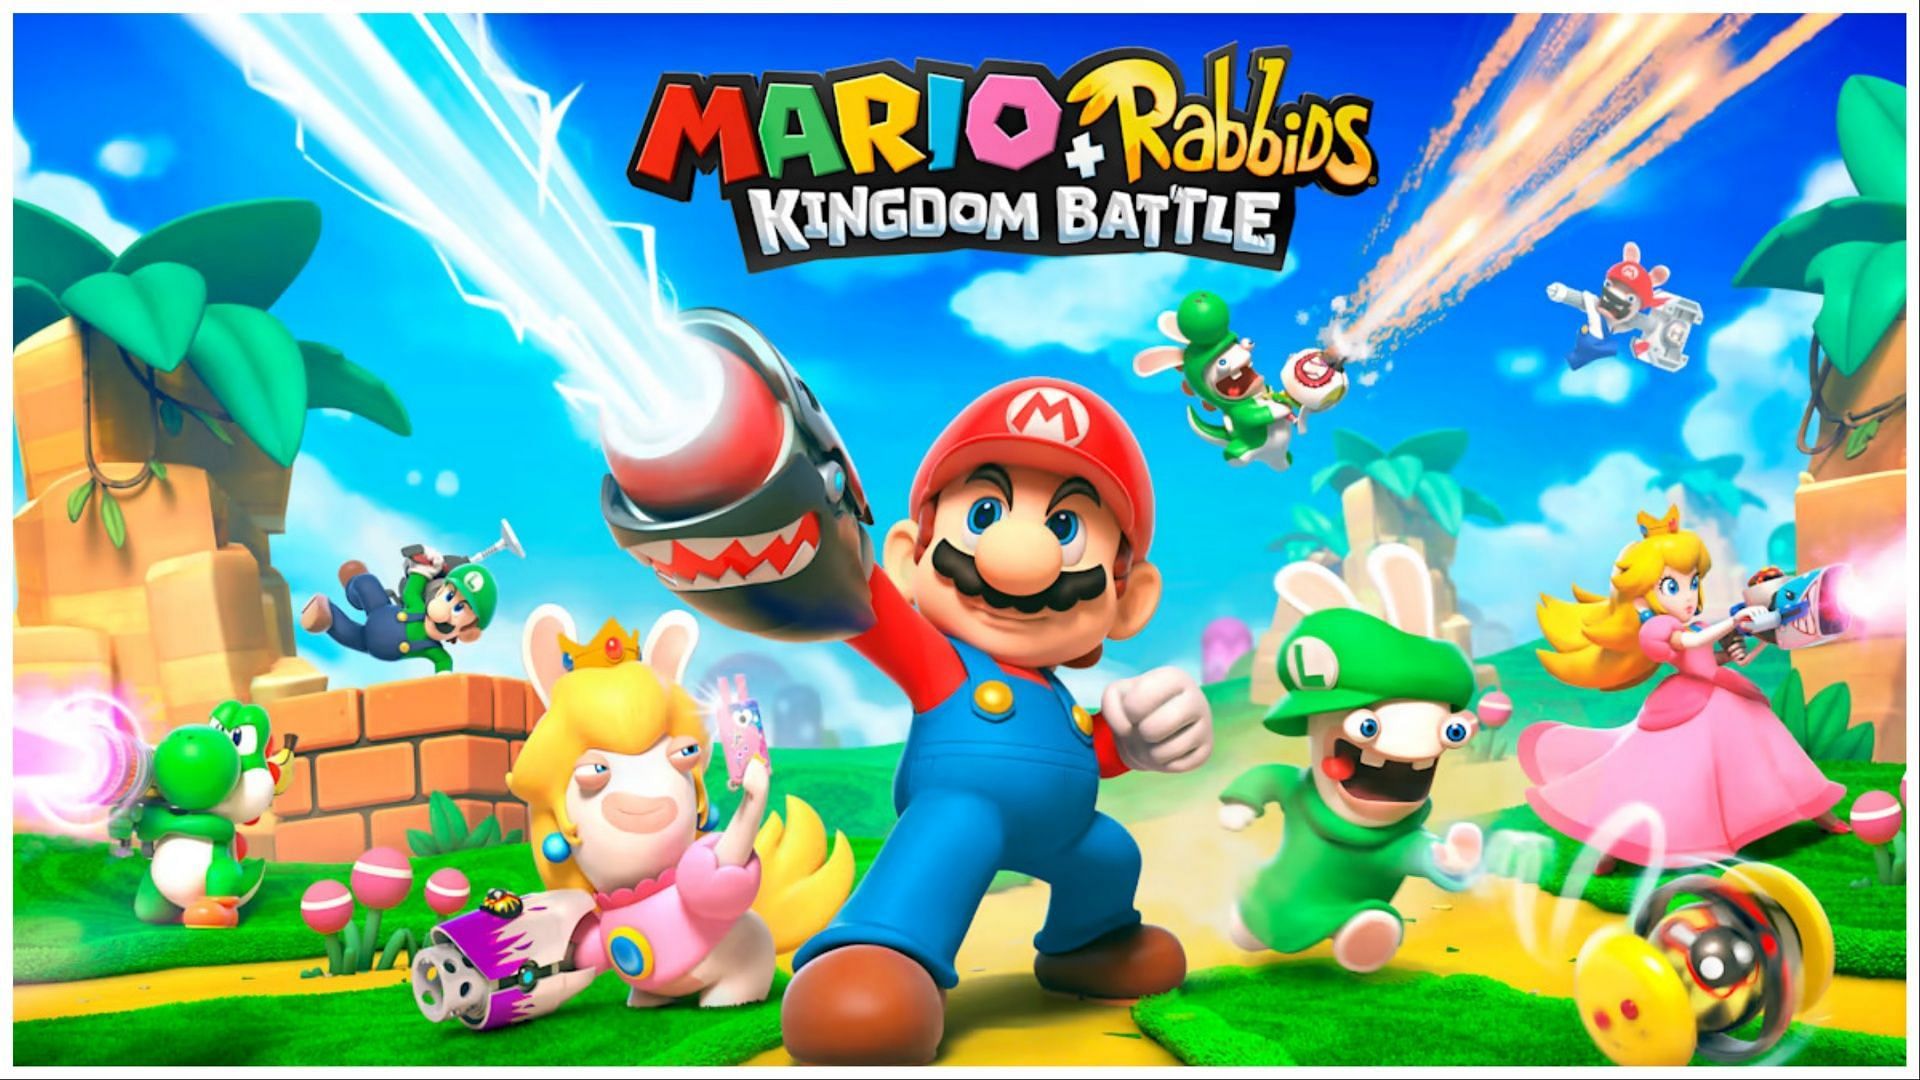 Mario + Rabbids: Kingdom Battle (Image via Nintendo)